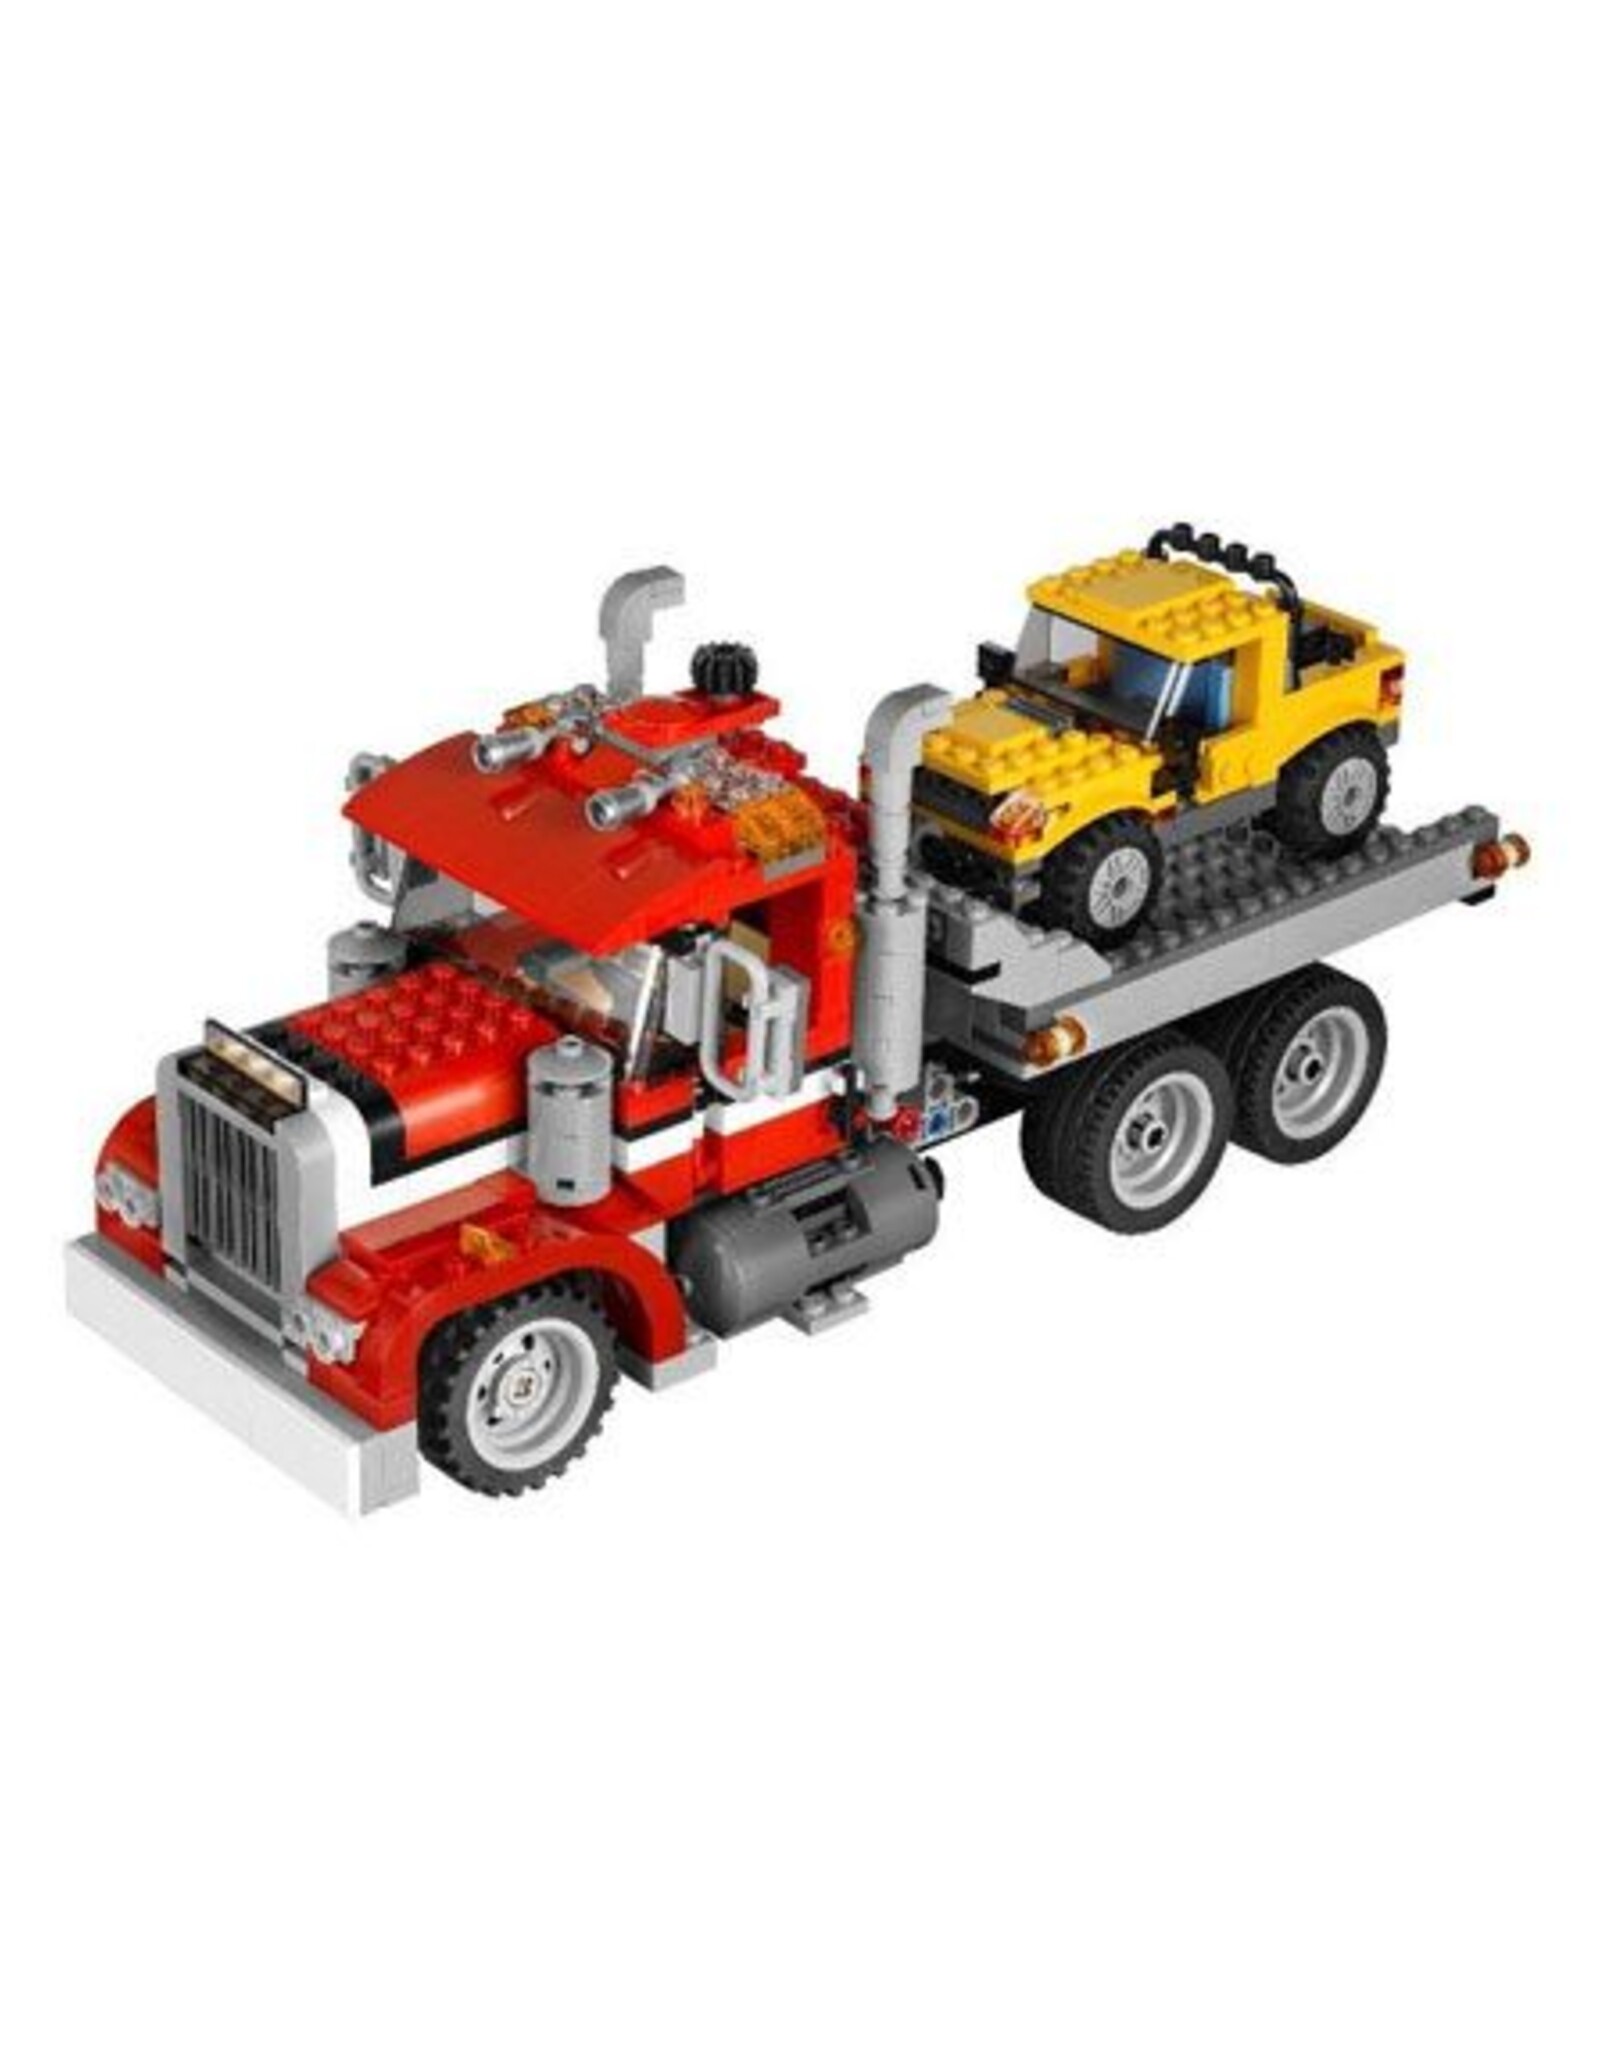 LEGO LEGO 7347 Highway Pickup CREATOR